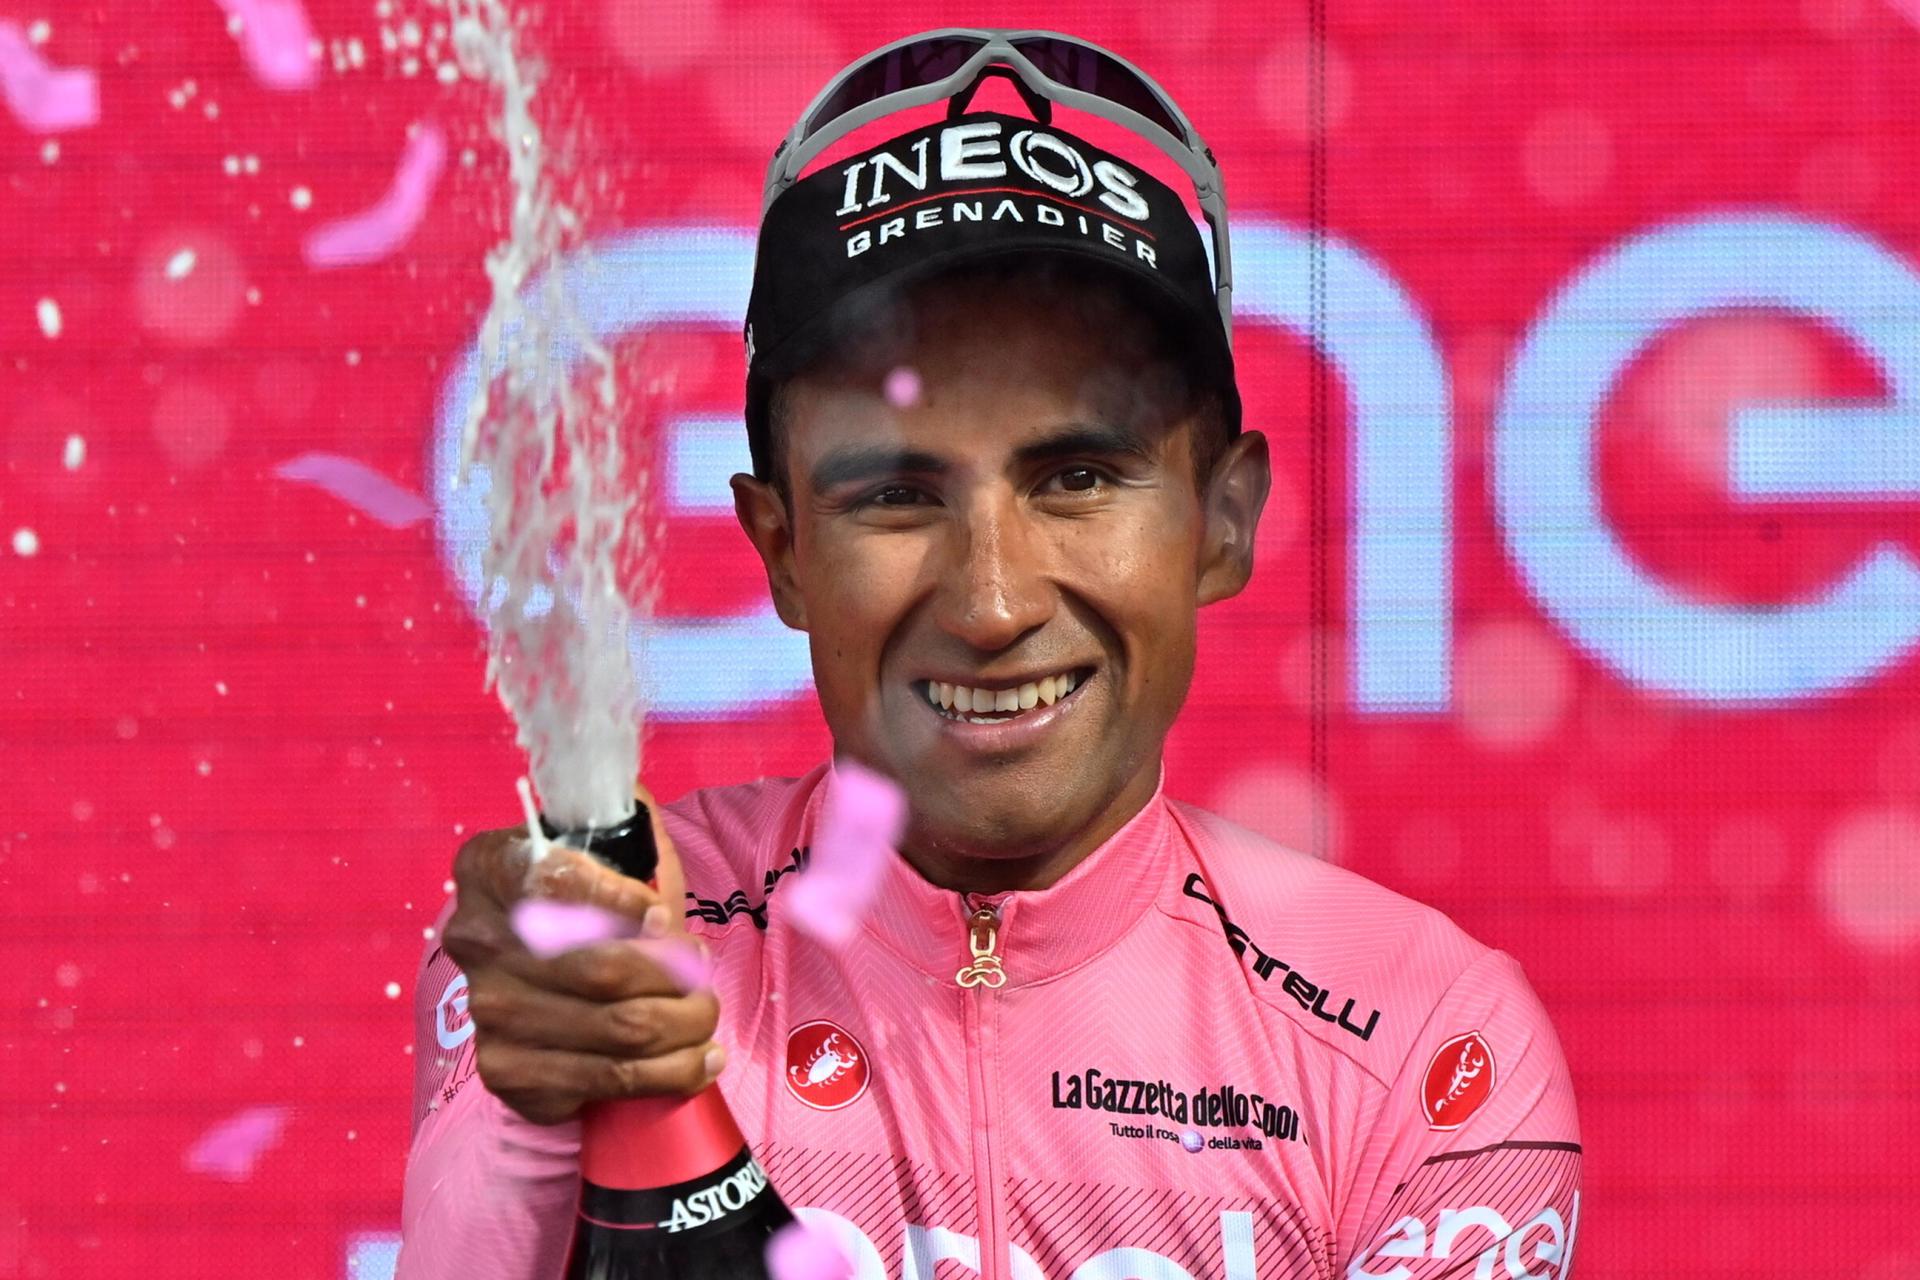 Jonathan Narváez en su celebración después de ganar el Giro de Italia